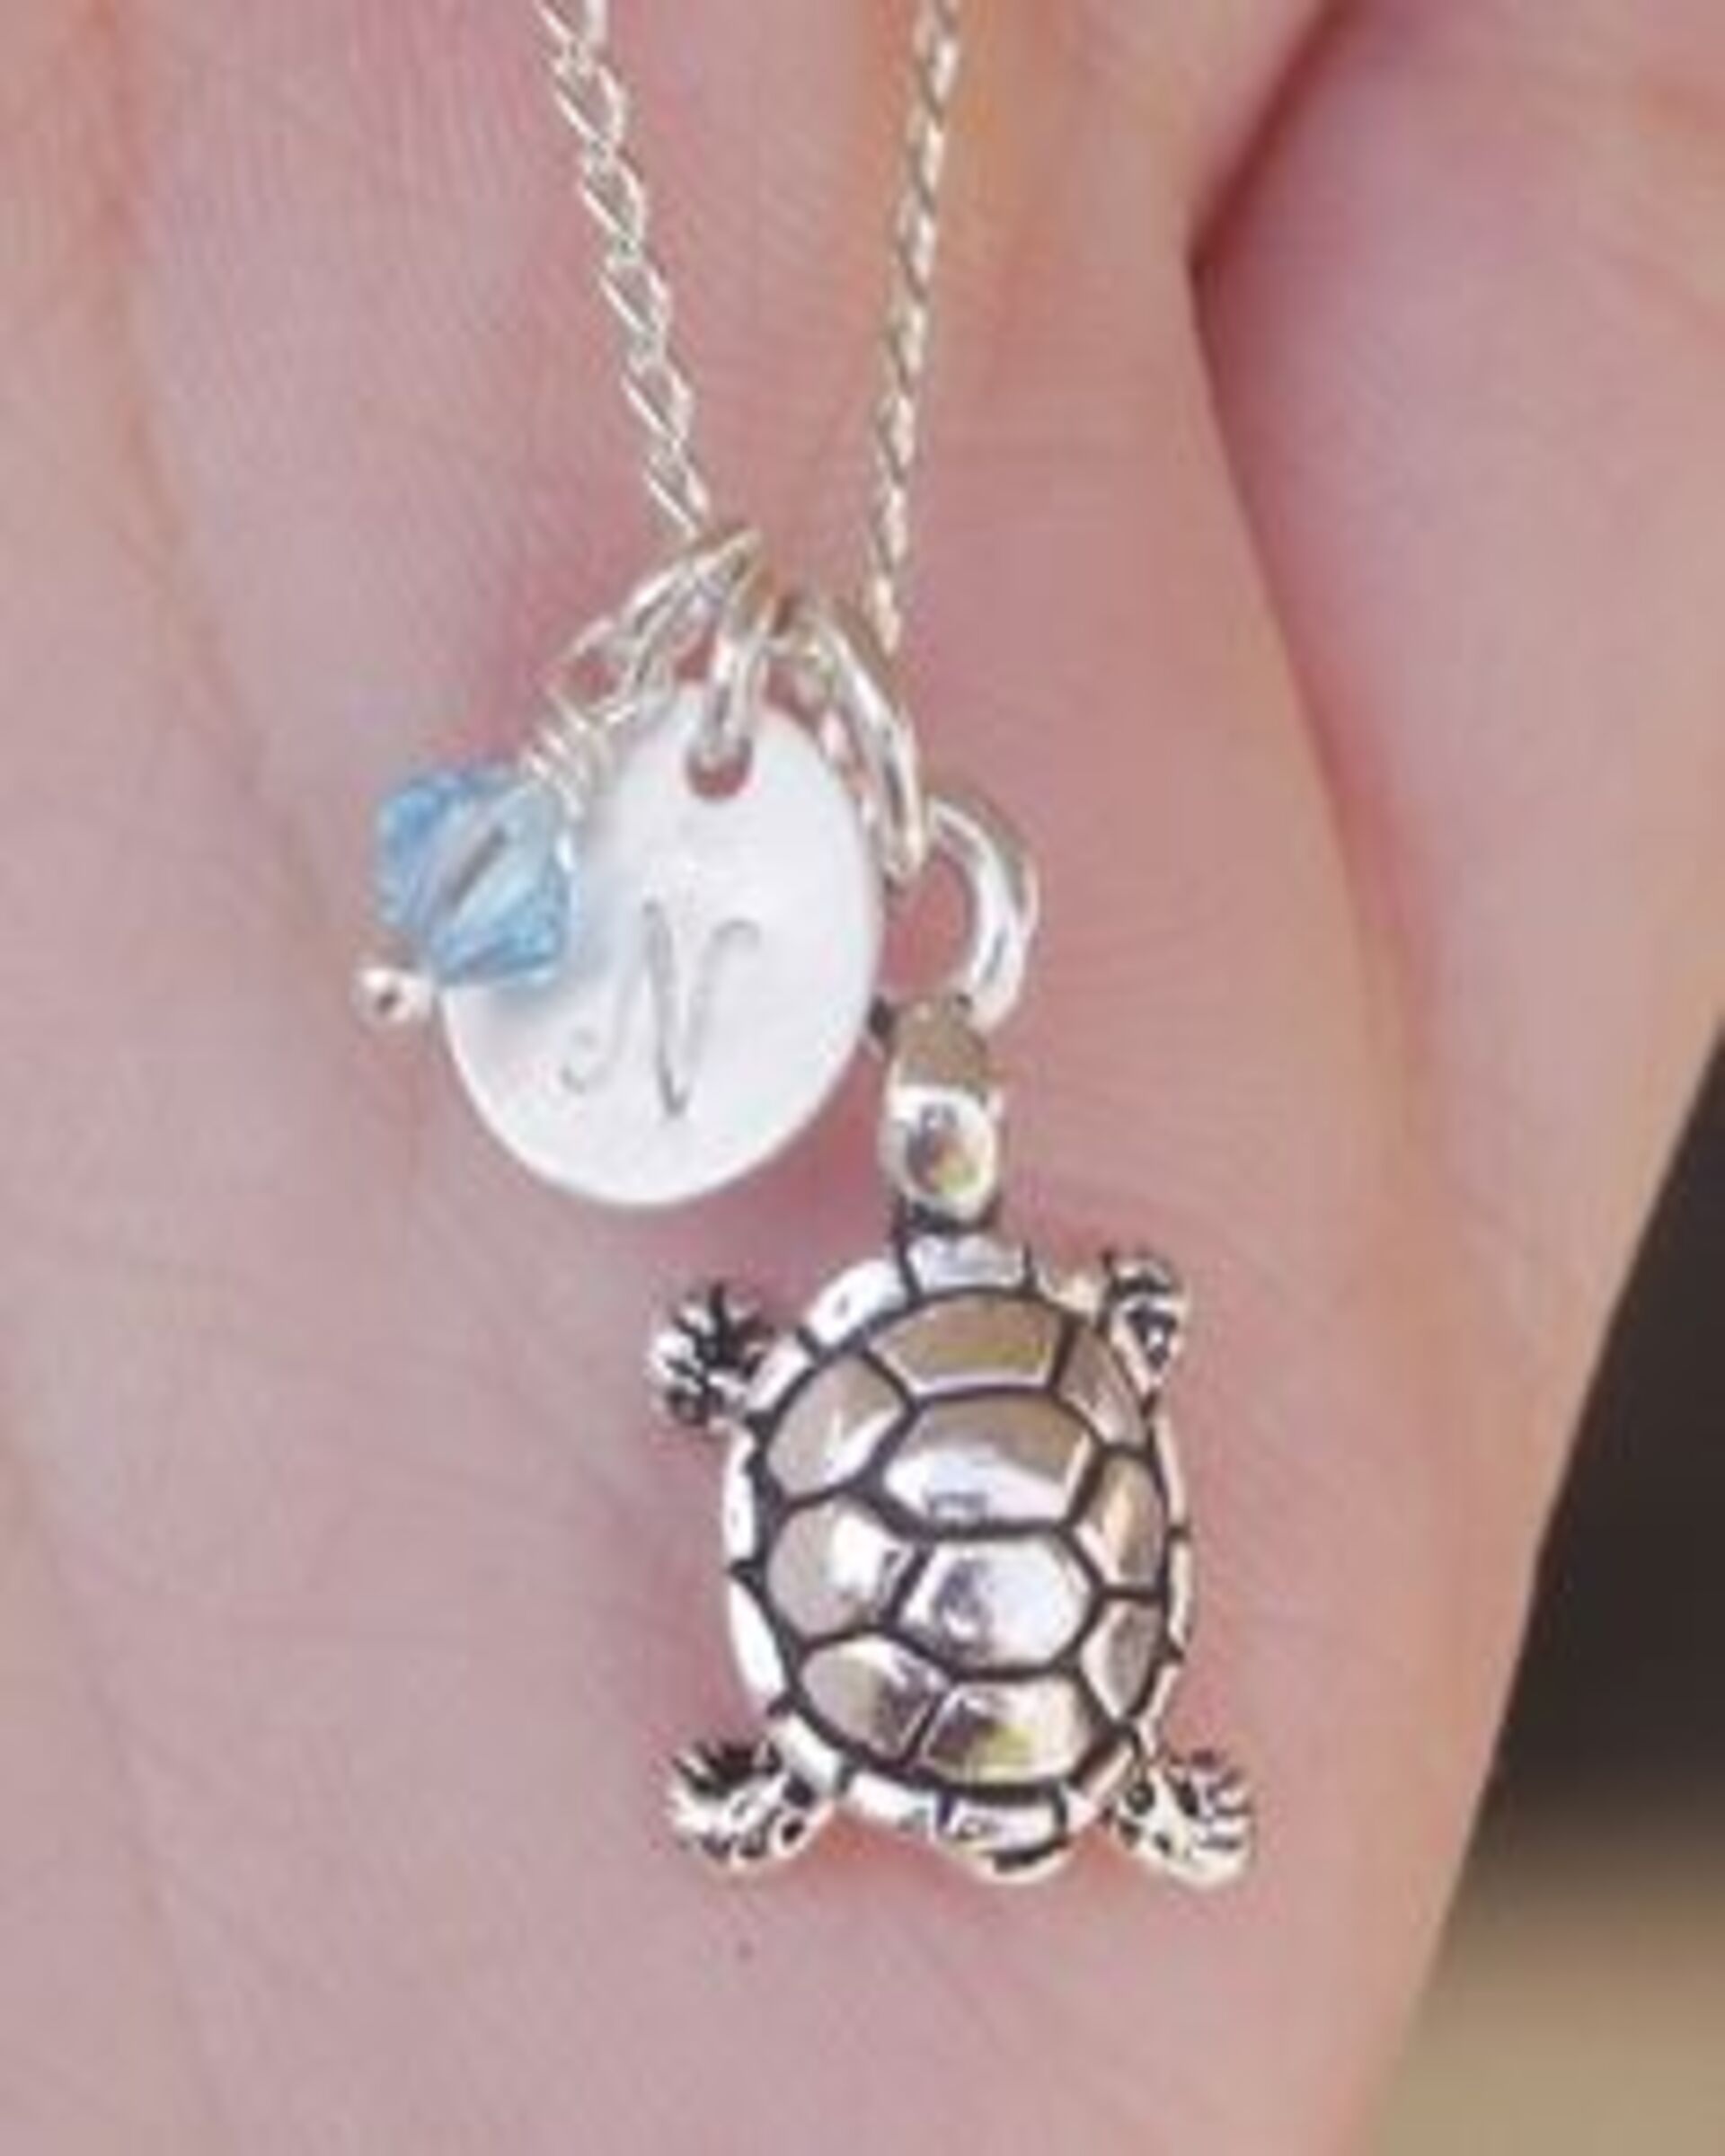 Un collar de tortuga con la inicial "N" | Fuente: Flickr